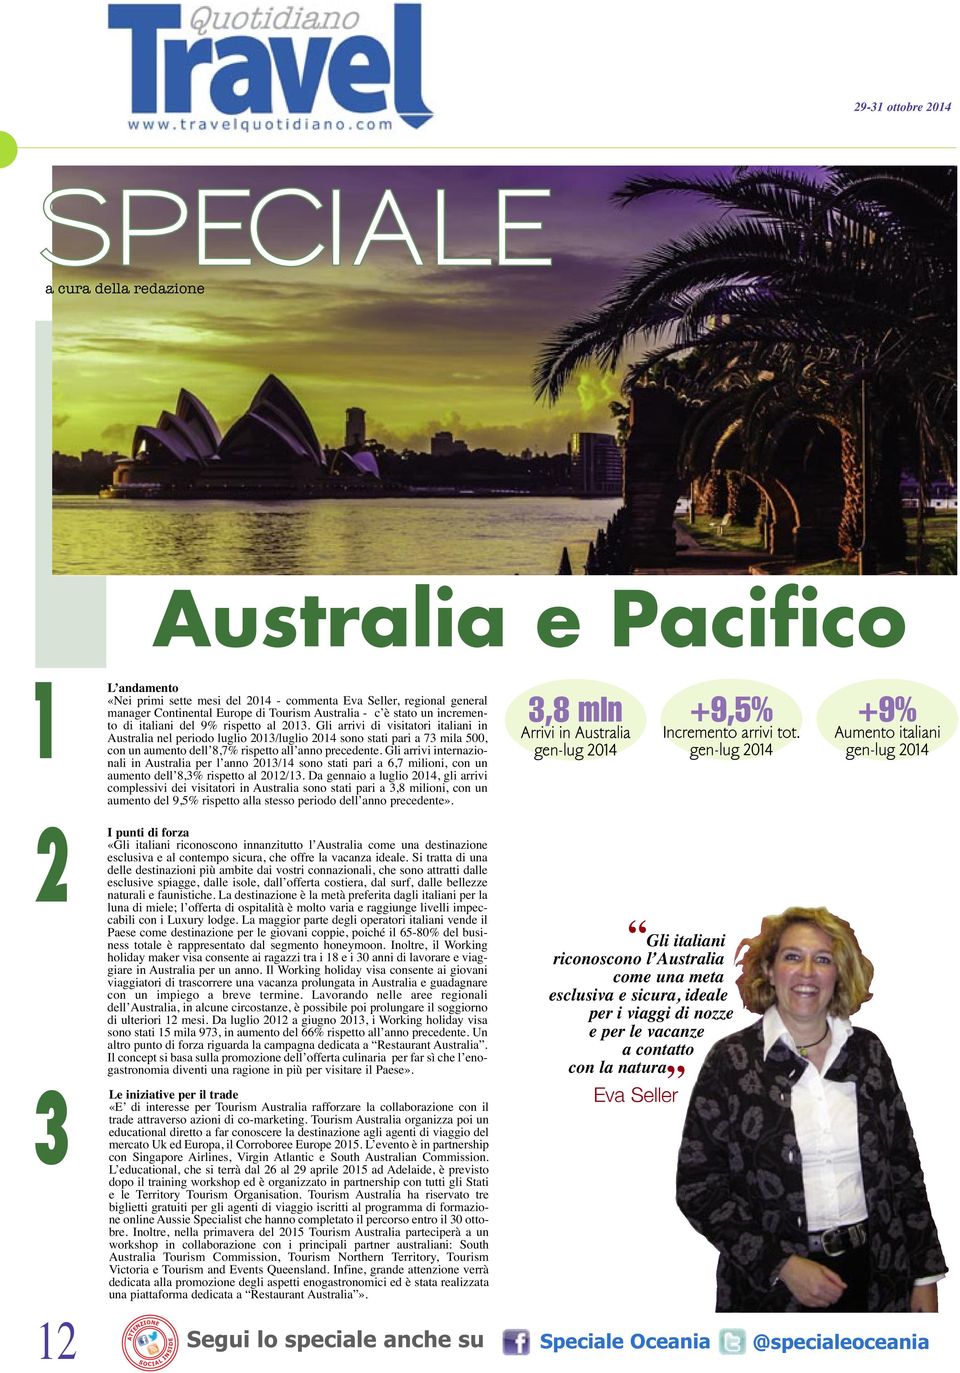 Gli arrivi di visitatori italiani in Australia nel periodo luglio 2013/luglio 2014 sono stati pari a 73 mila 500, con un aumento dell 8,7% rispetto all anno precedente.